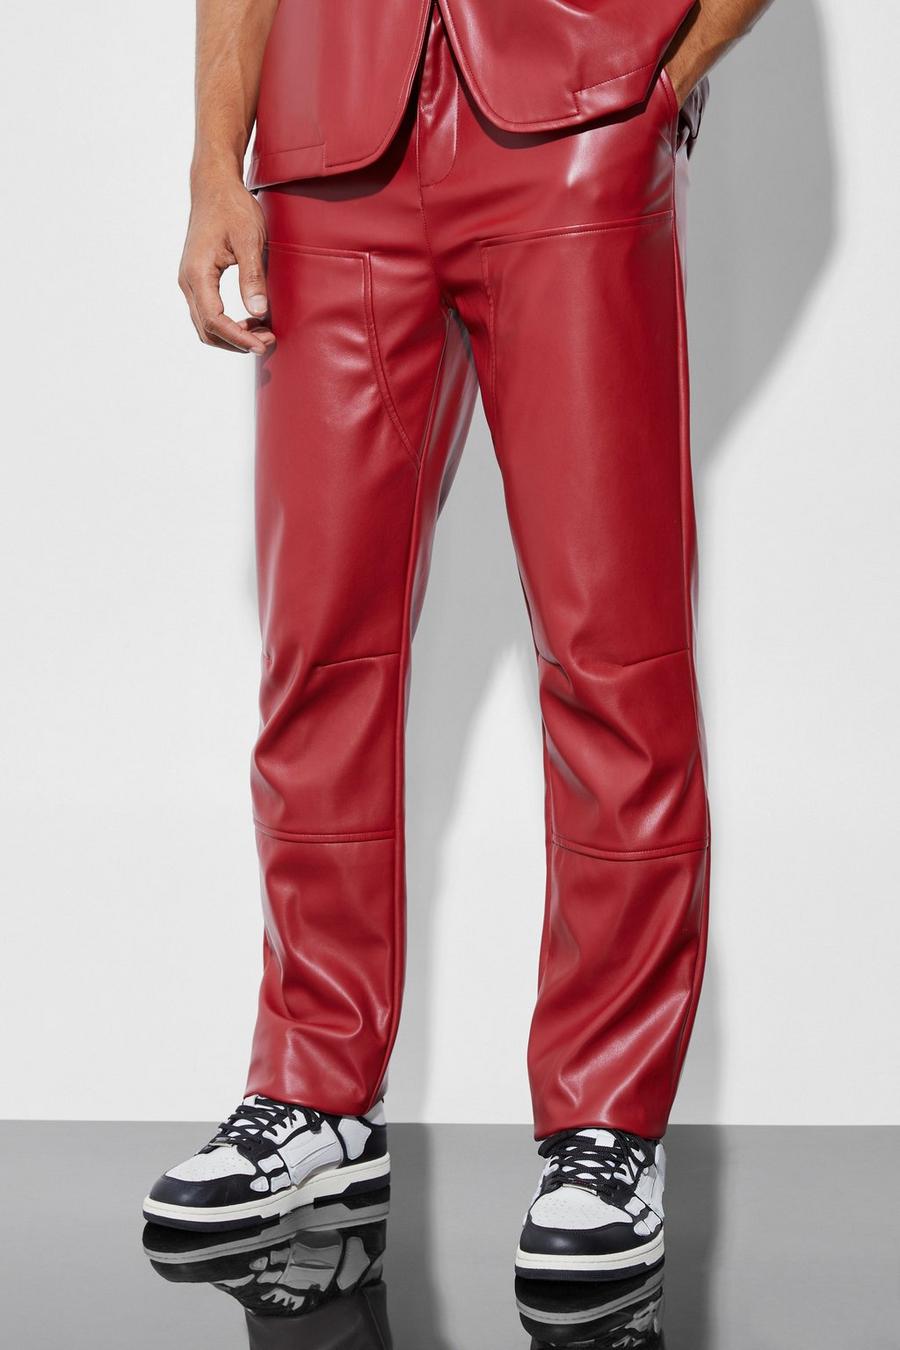 Red PU Pantalons Met Rechte Pijpen